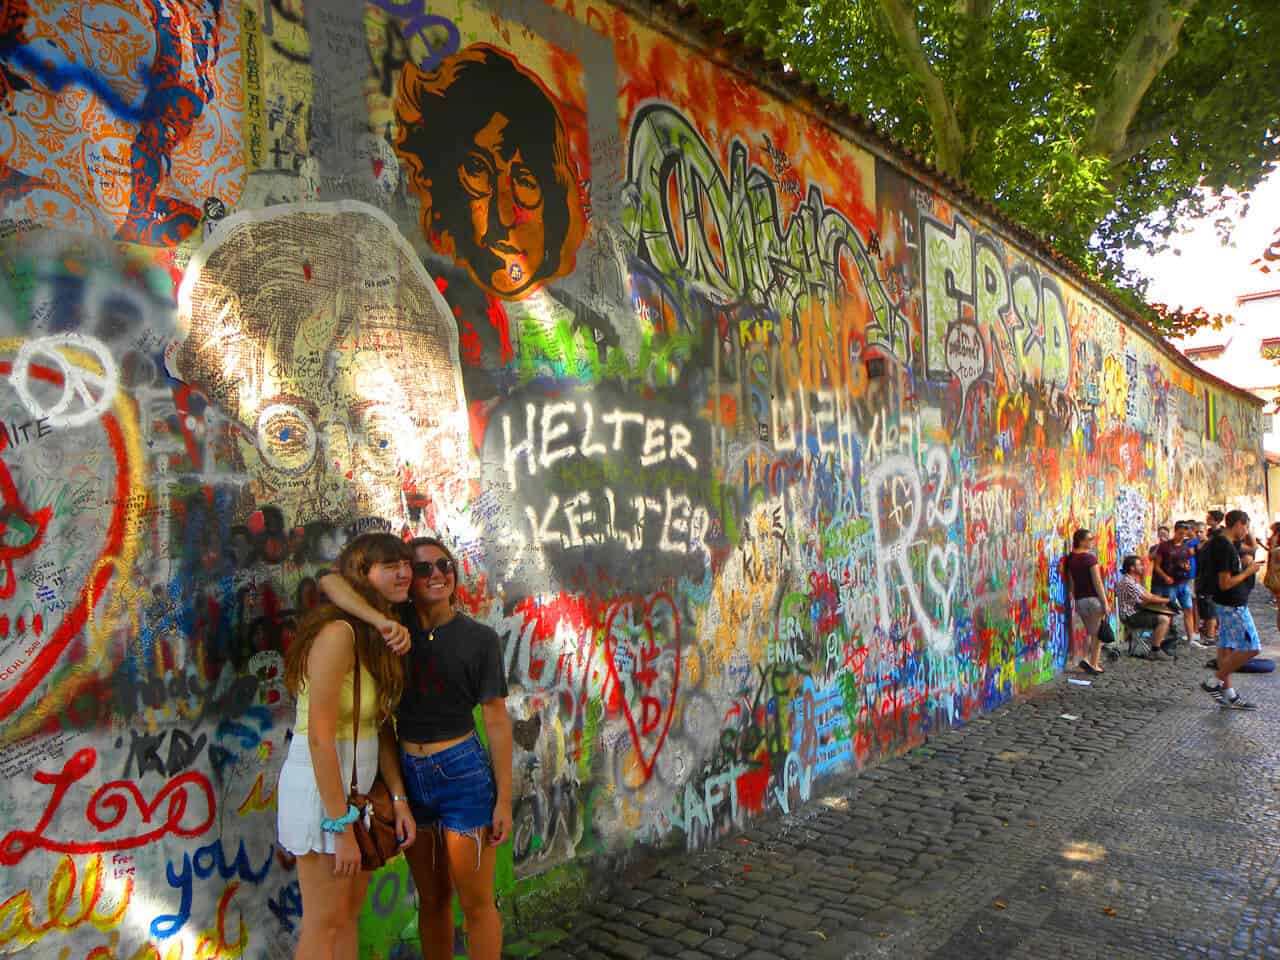 John Lennon wall in Prague. 